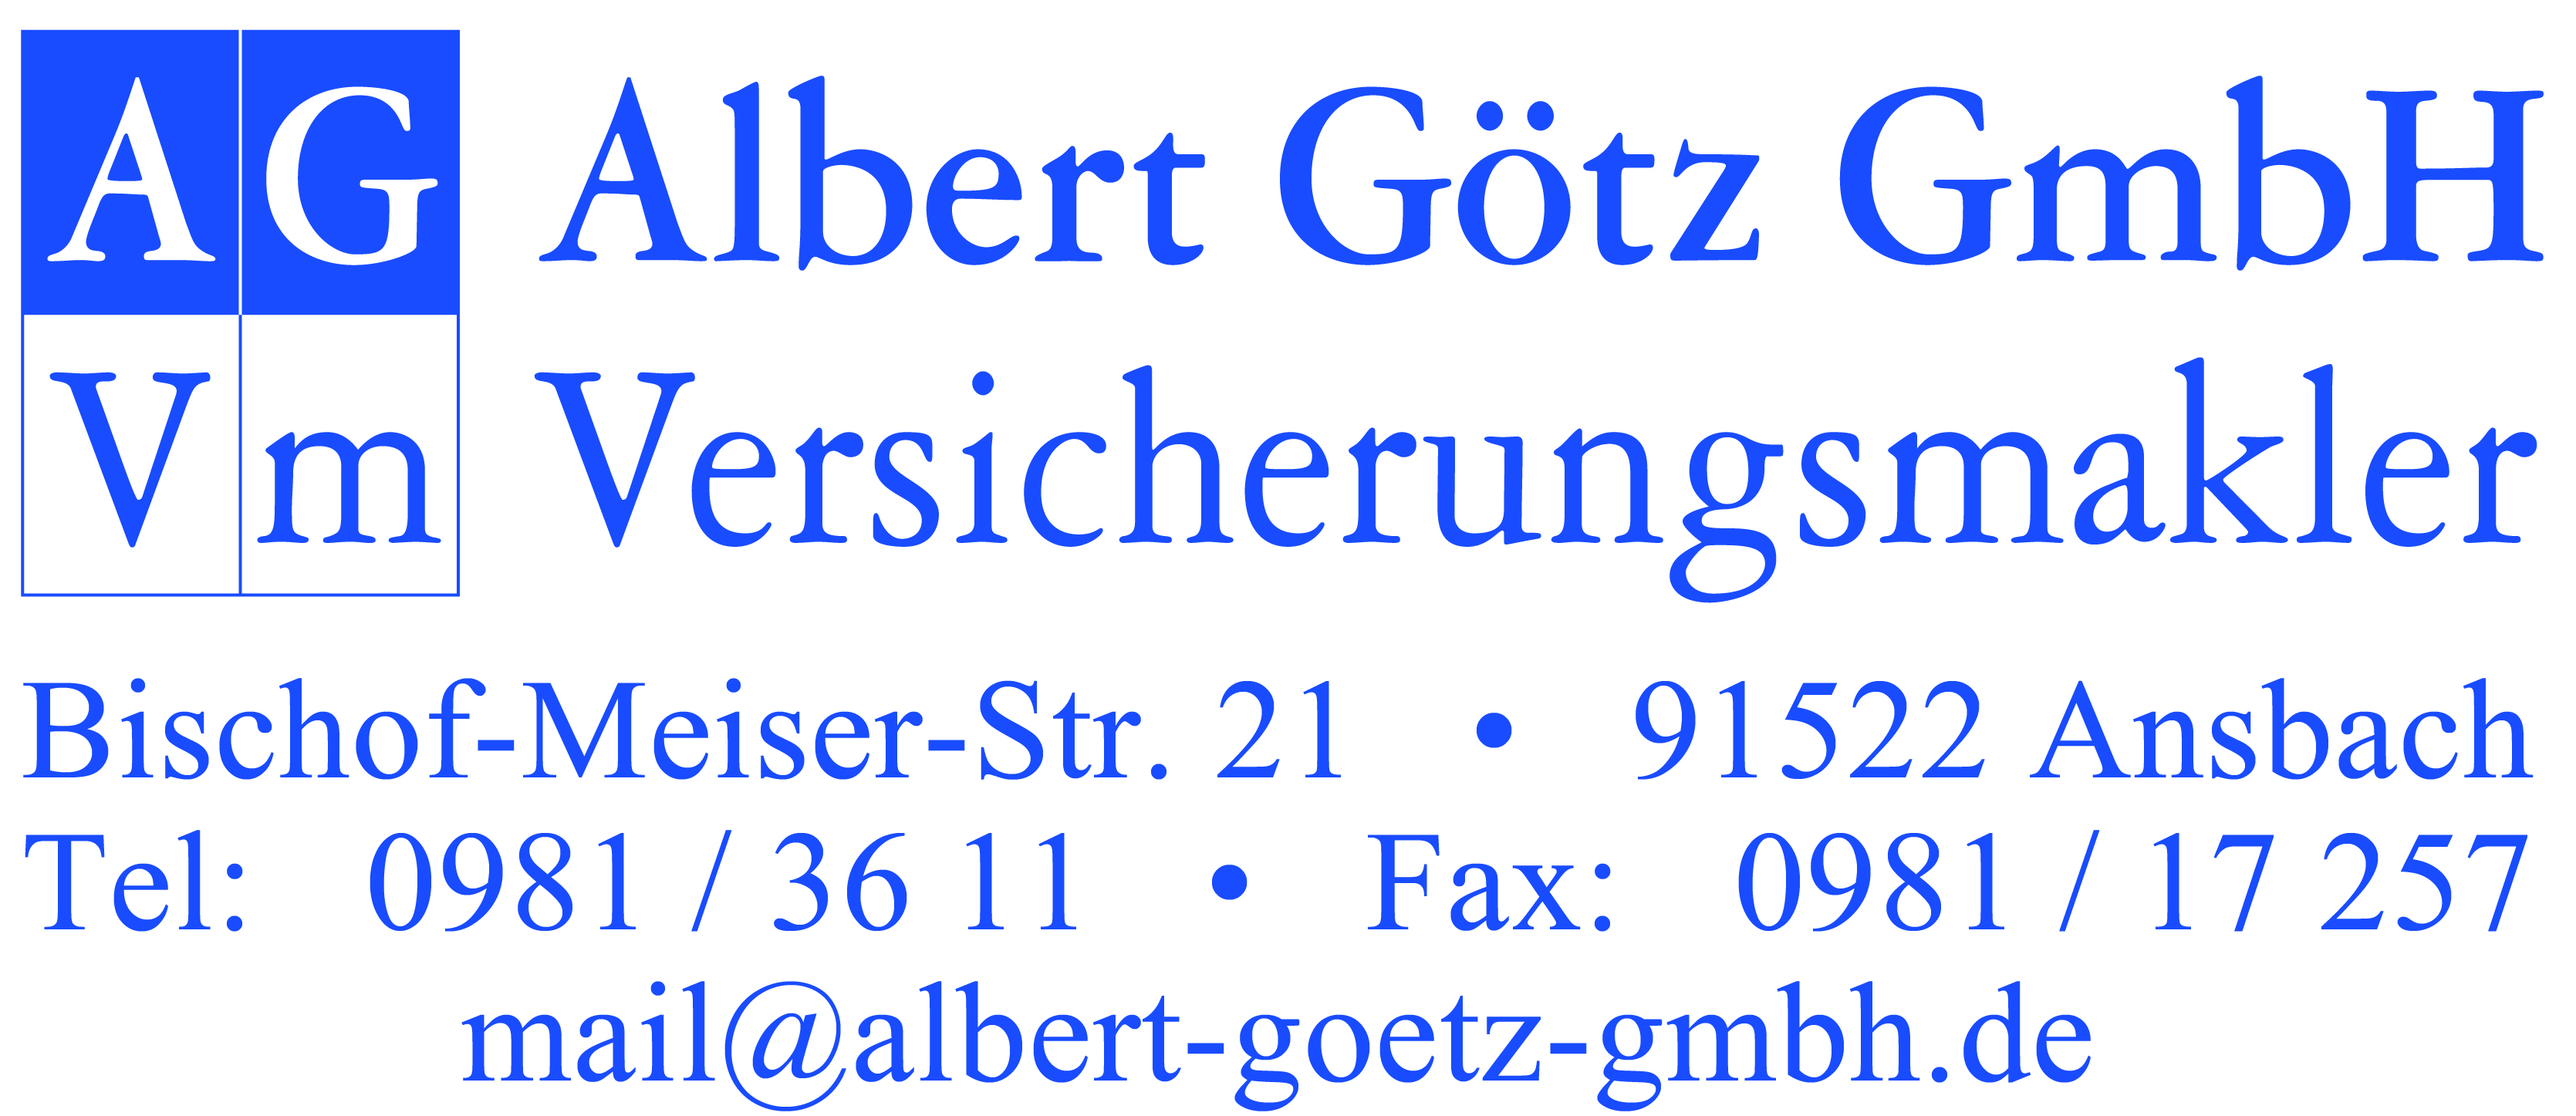 Kontakdaten der Albert Götz GmbH Versicherungsmakler Ansbach